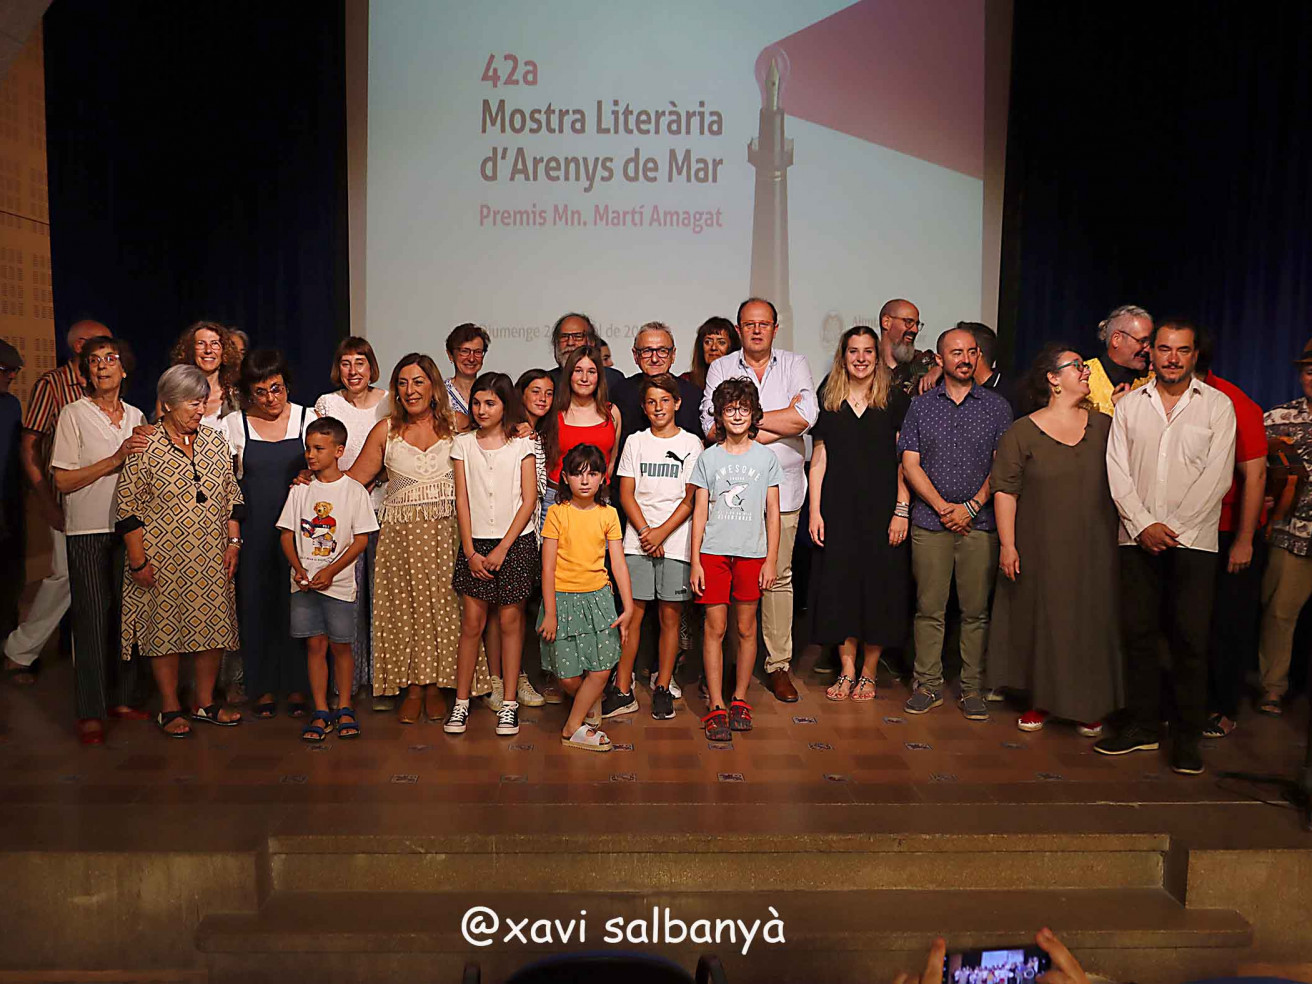 Lliurament dels premis Mn. Martí Amagat de la 42ena Mostra Literària d'Arenys de Mar